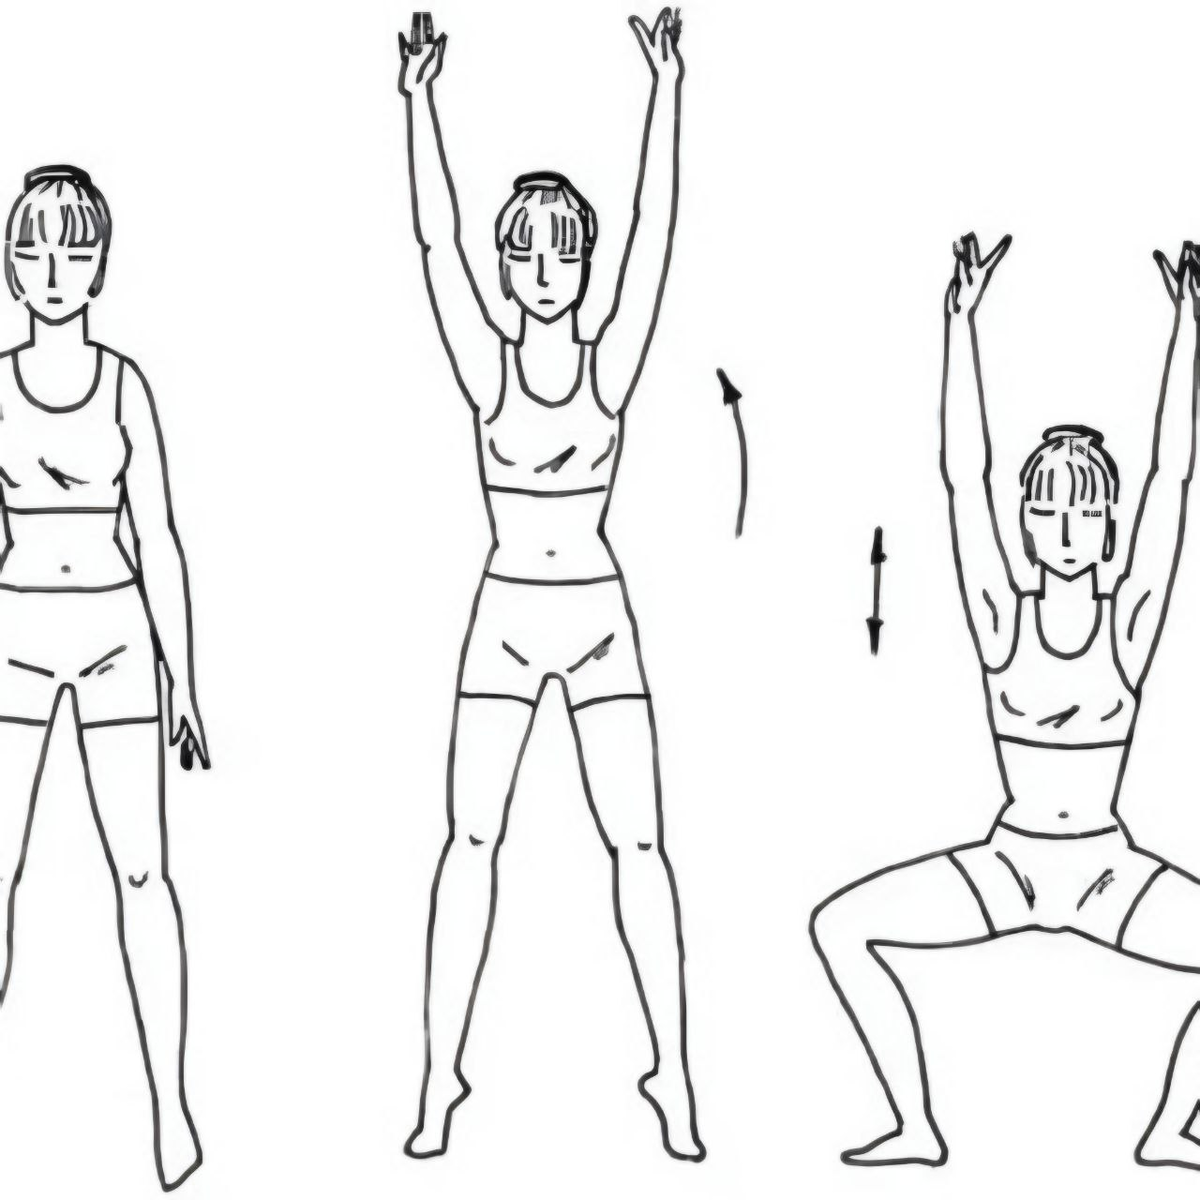 Упражнения стоя. Упражнение поднятие рук в стороны. Ноги на ширине плеч руки вдоль туловища. Упражнения для туловища и ног. Прыжки вправо влево